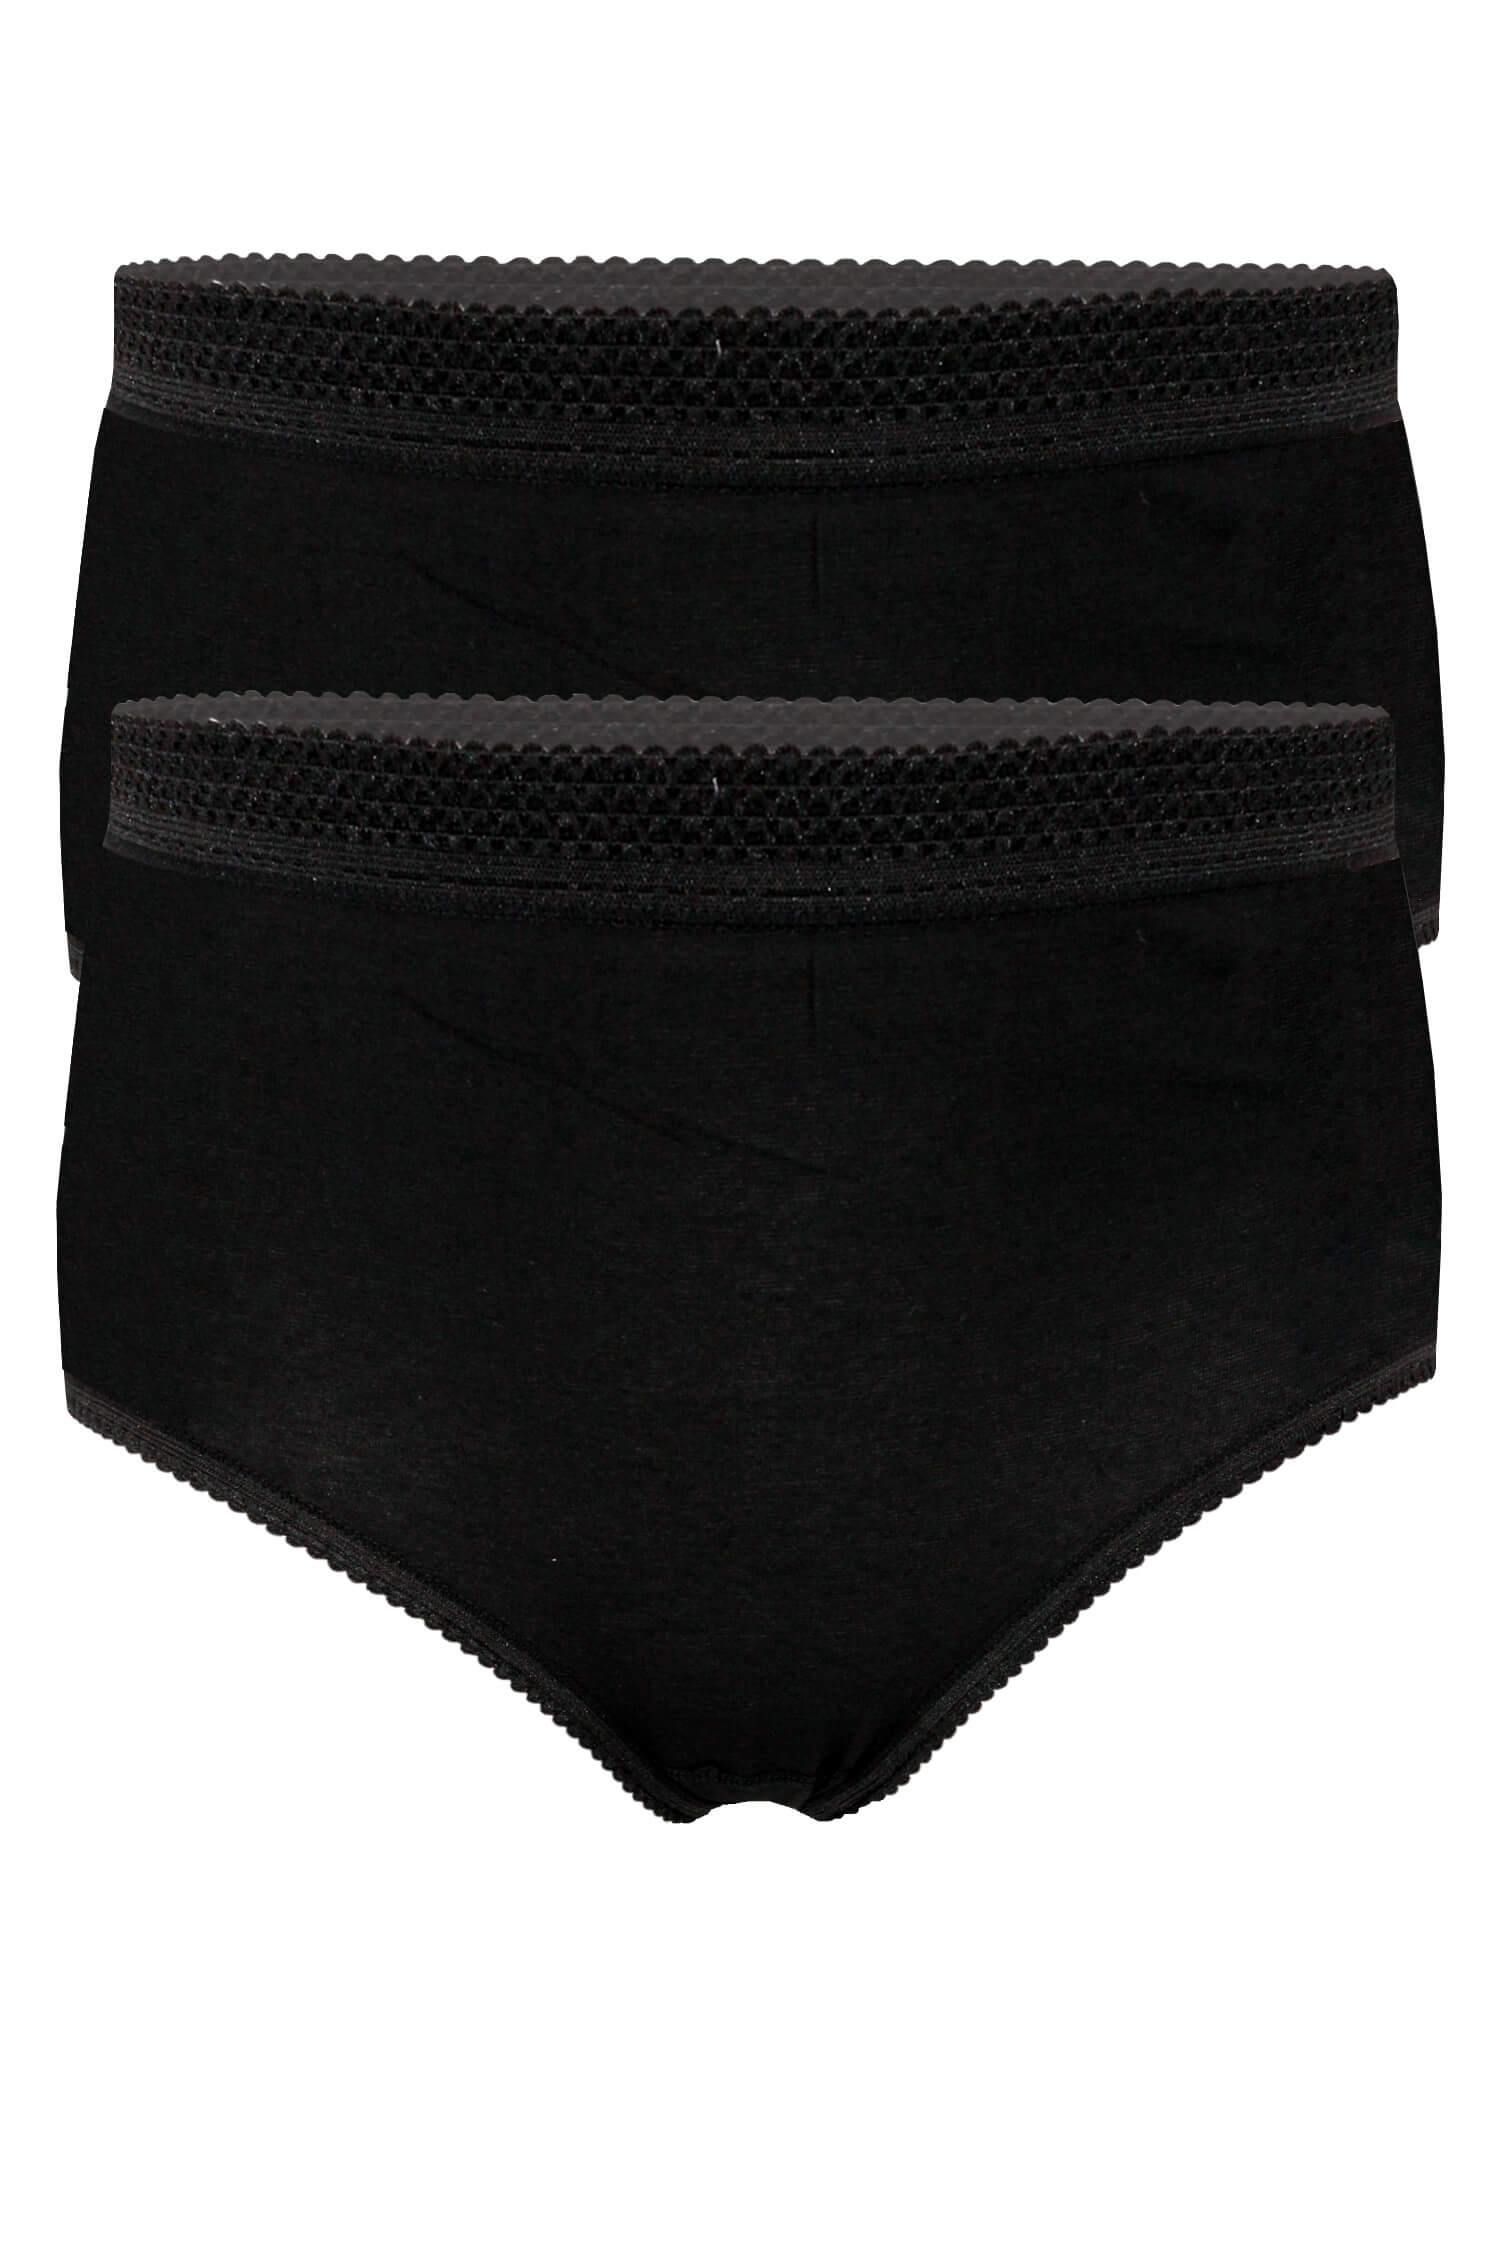 Apolena bavlněné kalhotky s vysokým pasem 2ks XL černá